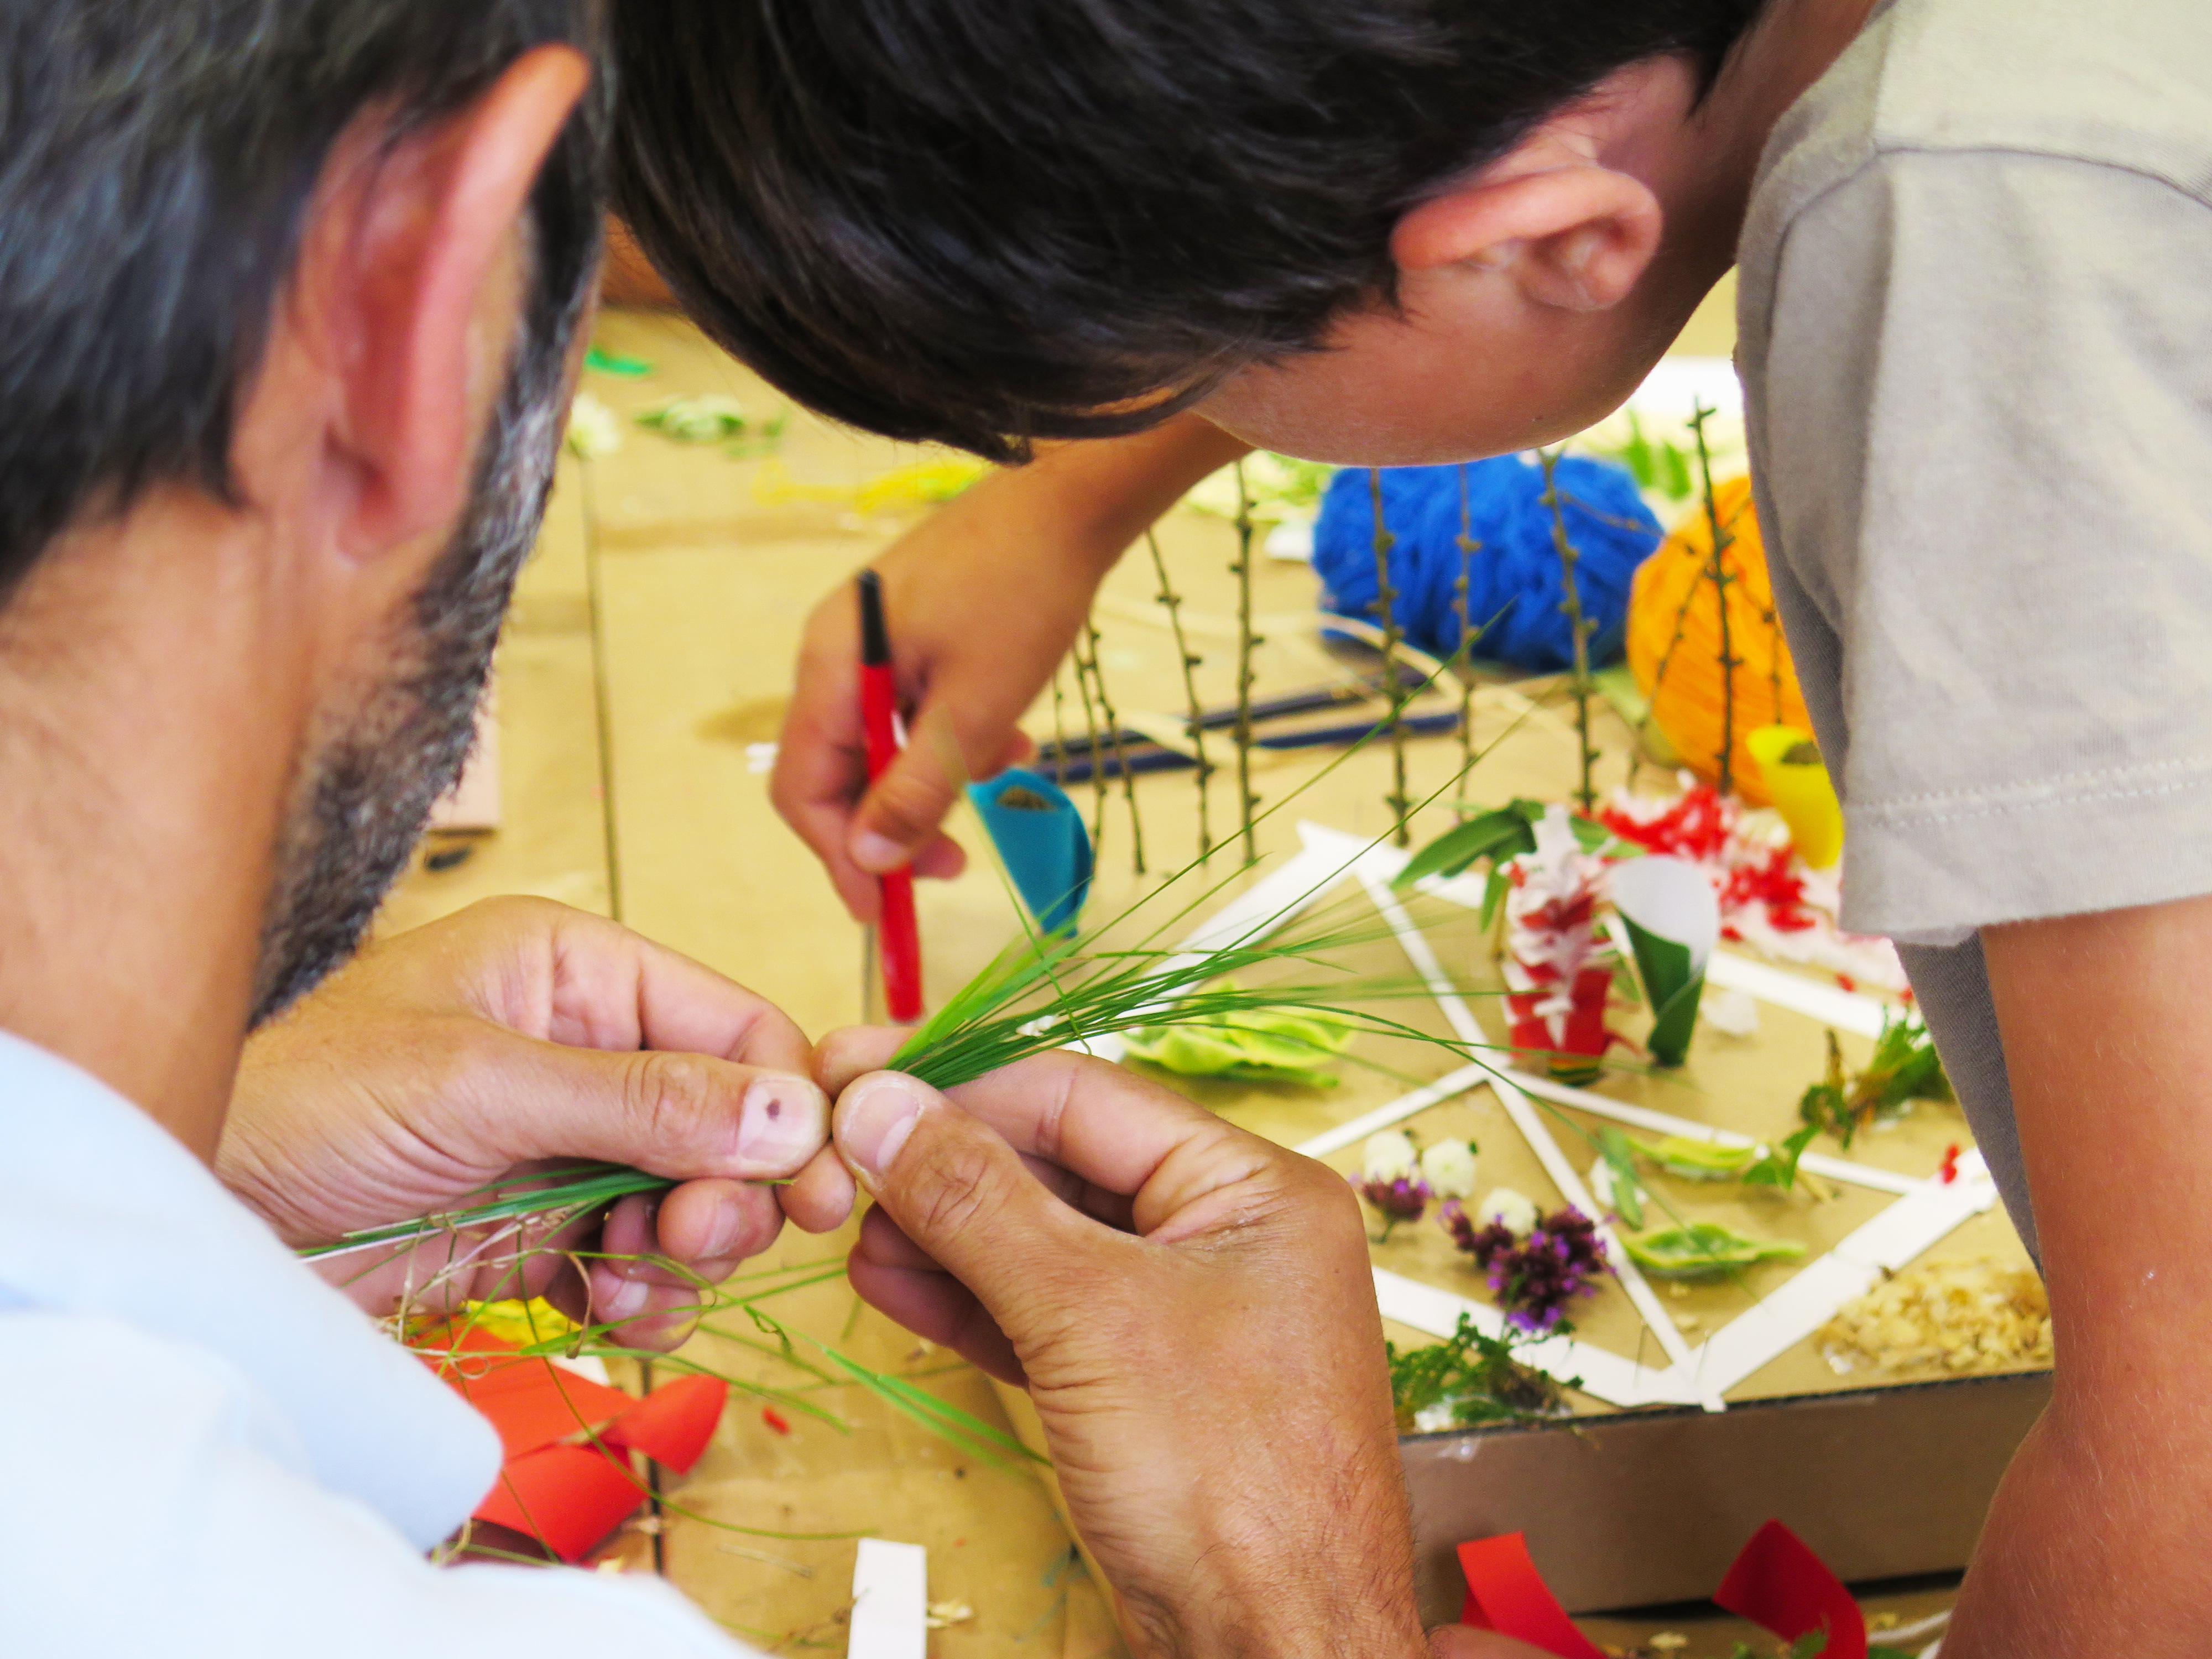 Adulte et enfant réalisant une maquette de jardin à partir de végétaux collectés.